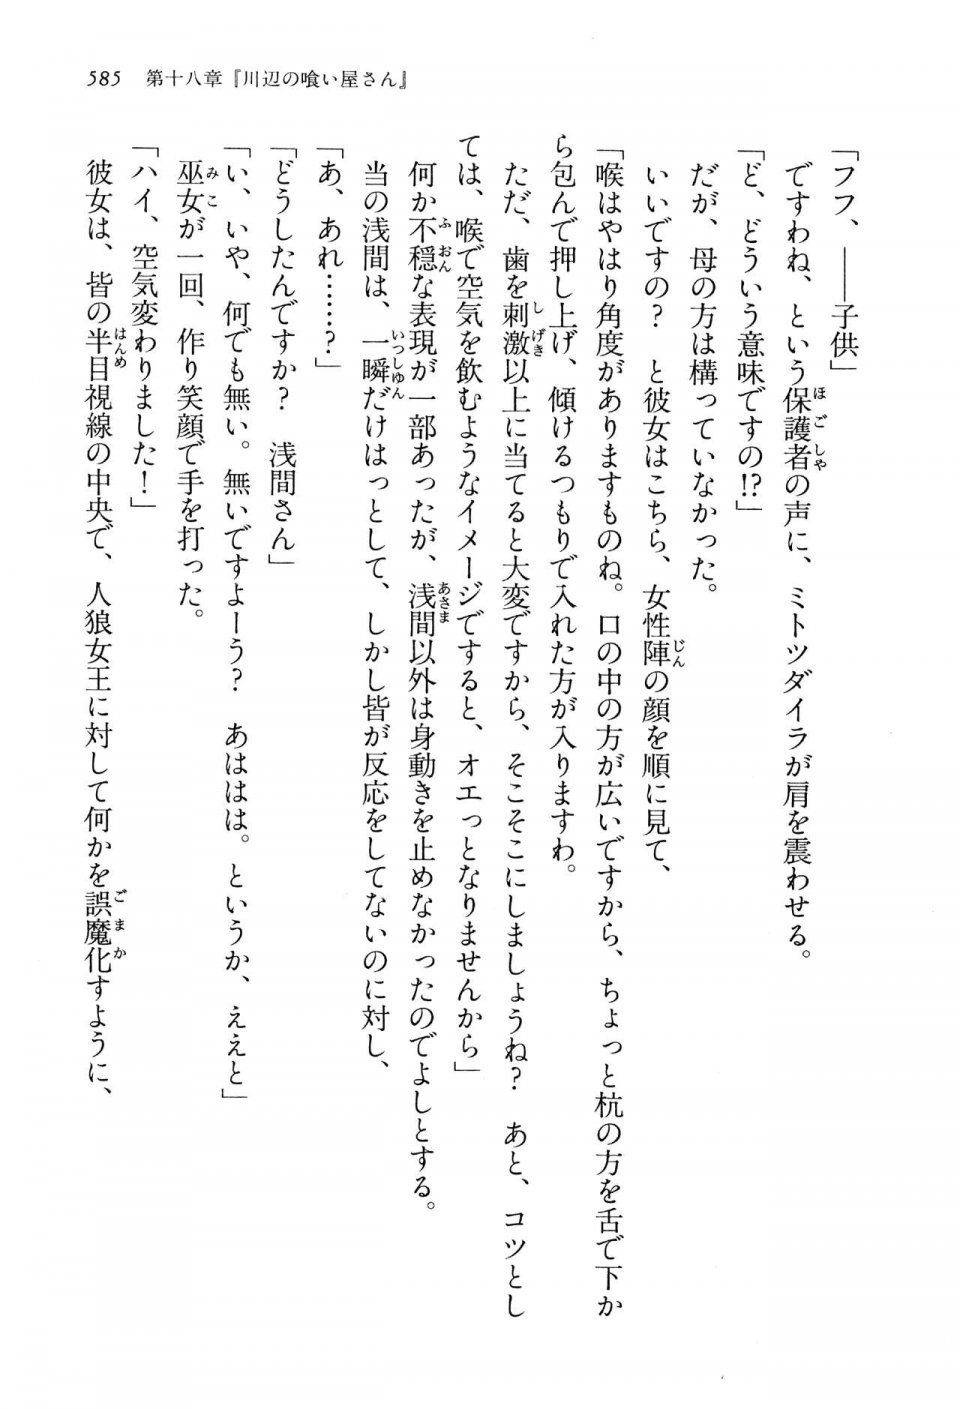 Kyoukai Senjou no Horizon LN Vol 13(6A) - Photo #585